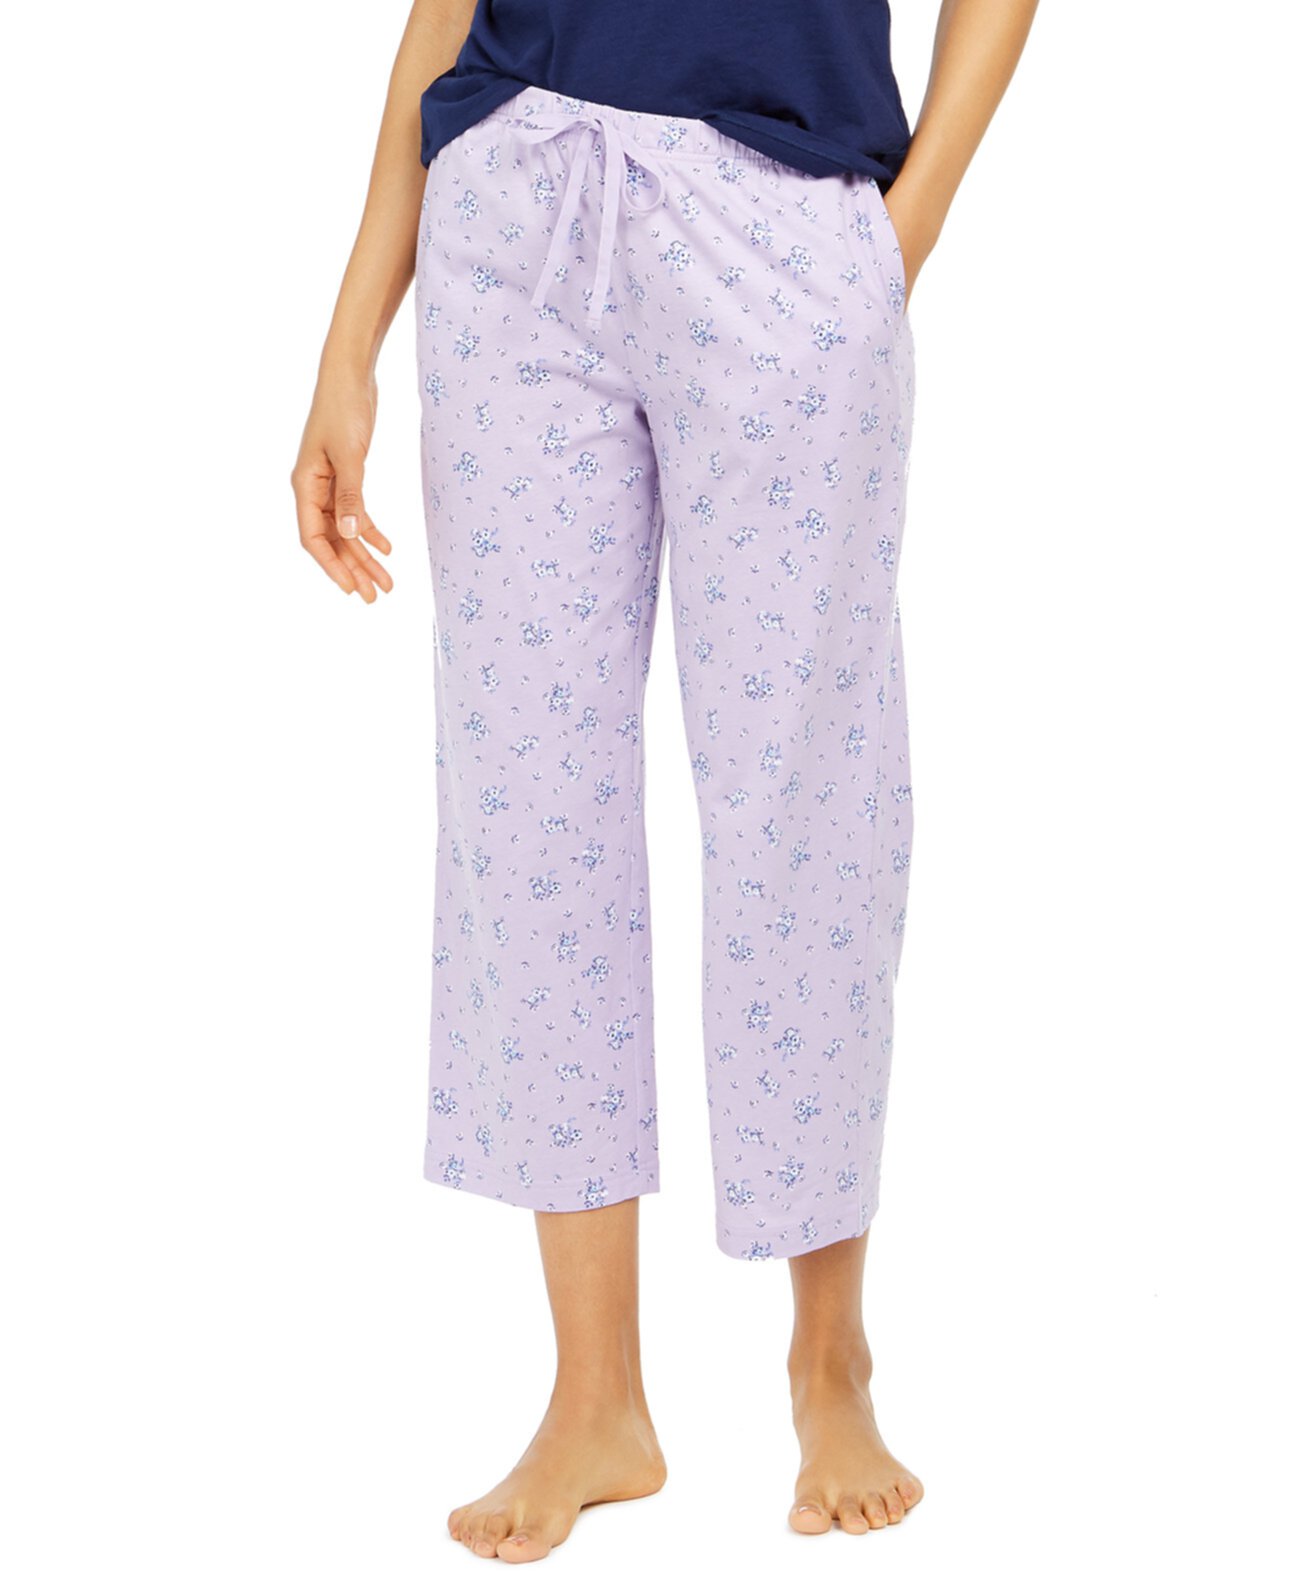 Укороченные пижамные штаны с принтом из хлопка, созданные для Macy's Charter Club